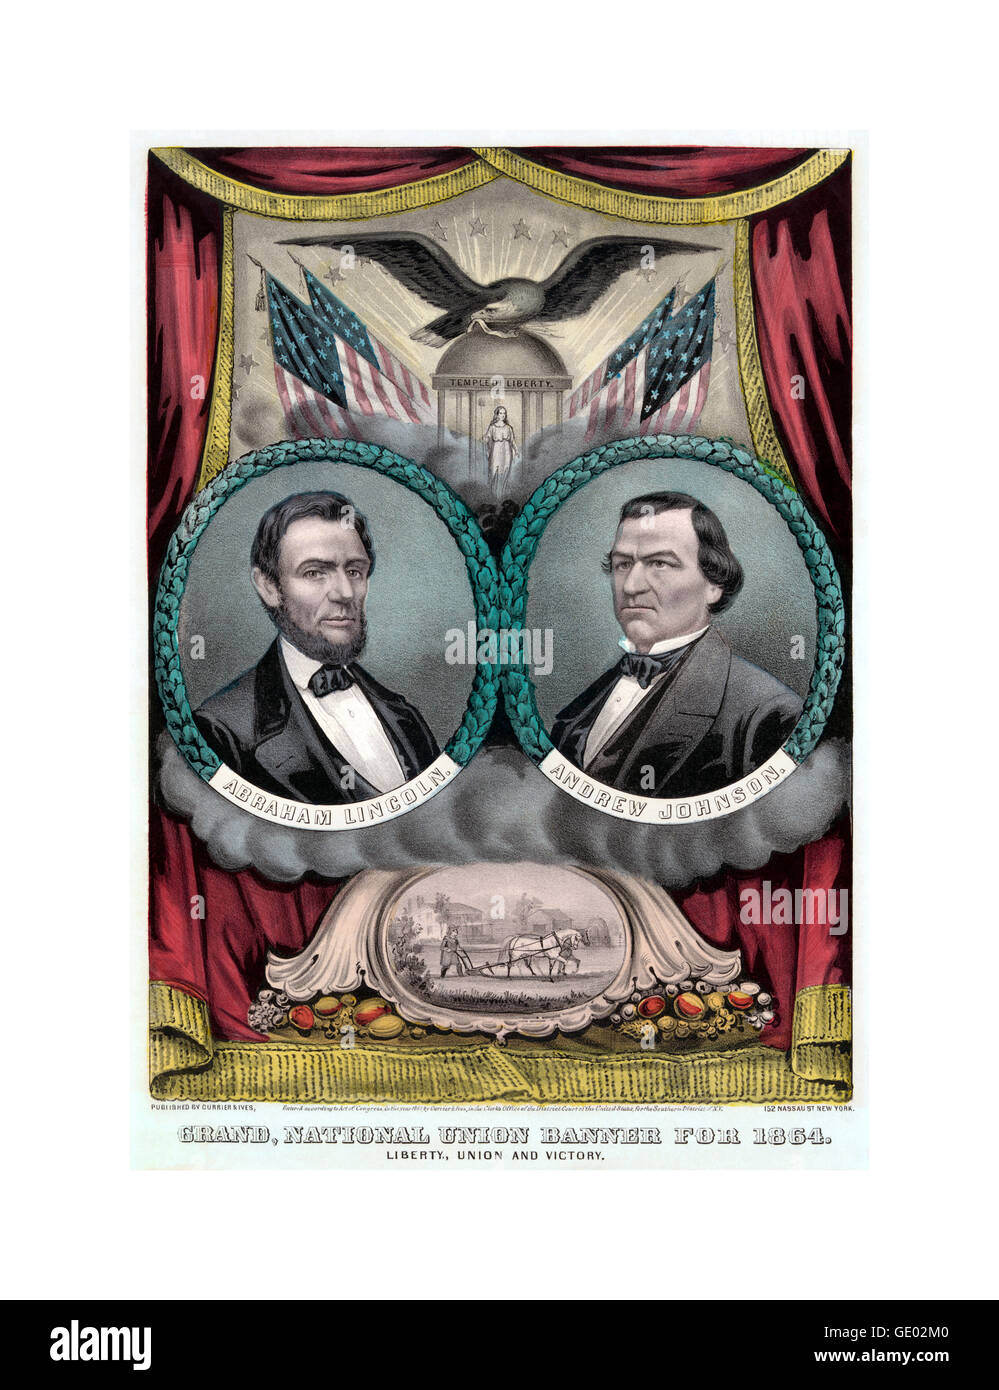 Vereinigten Staaten republikanischen Präsidenten Ticket zeigt 1864 Poster einen Kampagne Banner für den republikanischen Präsidentschaftskandidaten Abraham Lincoln und Andrew Johnson für die Vizepräsidentschaft. Stockfoto